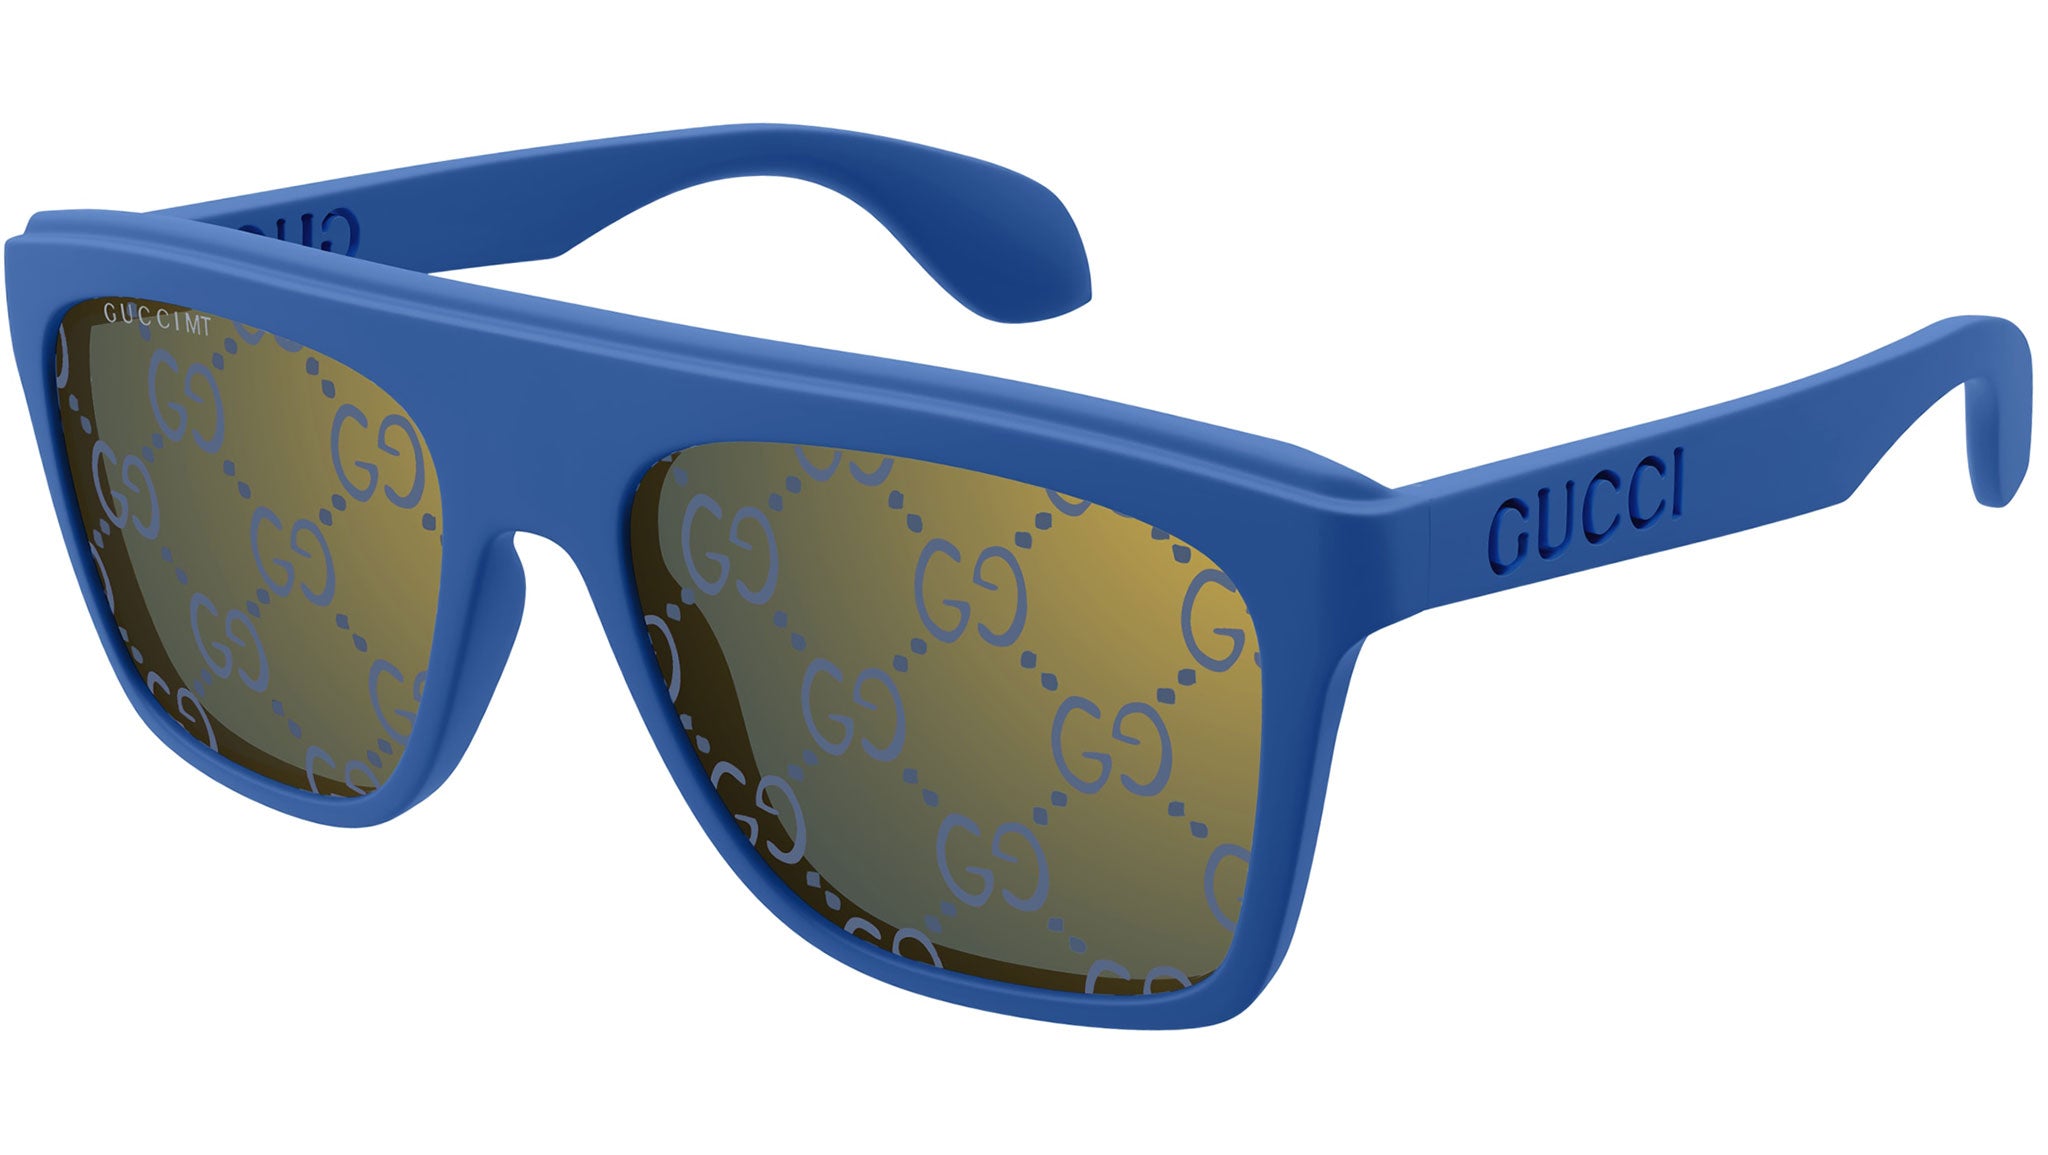 GUCCI GG1570S/004 - Sunglasses